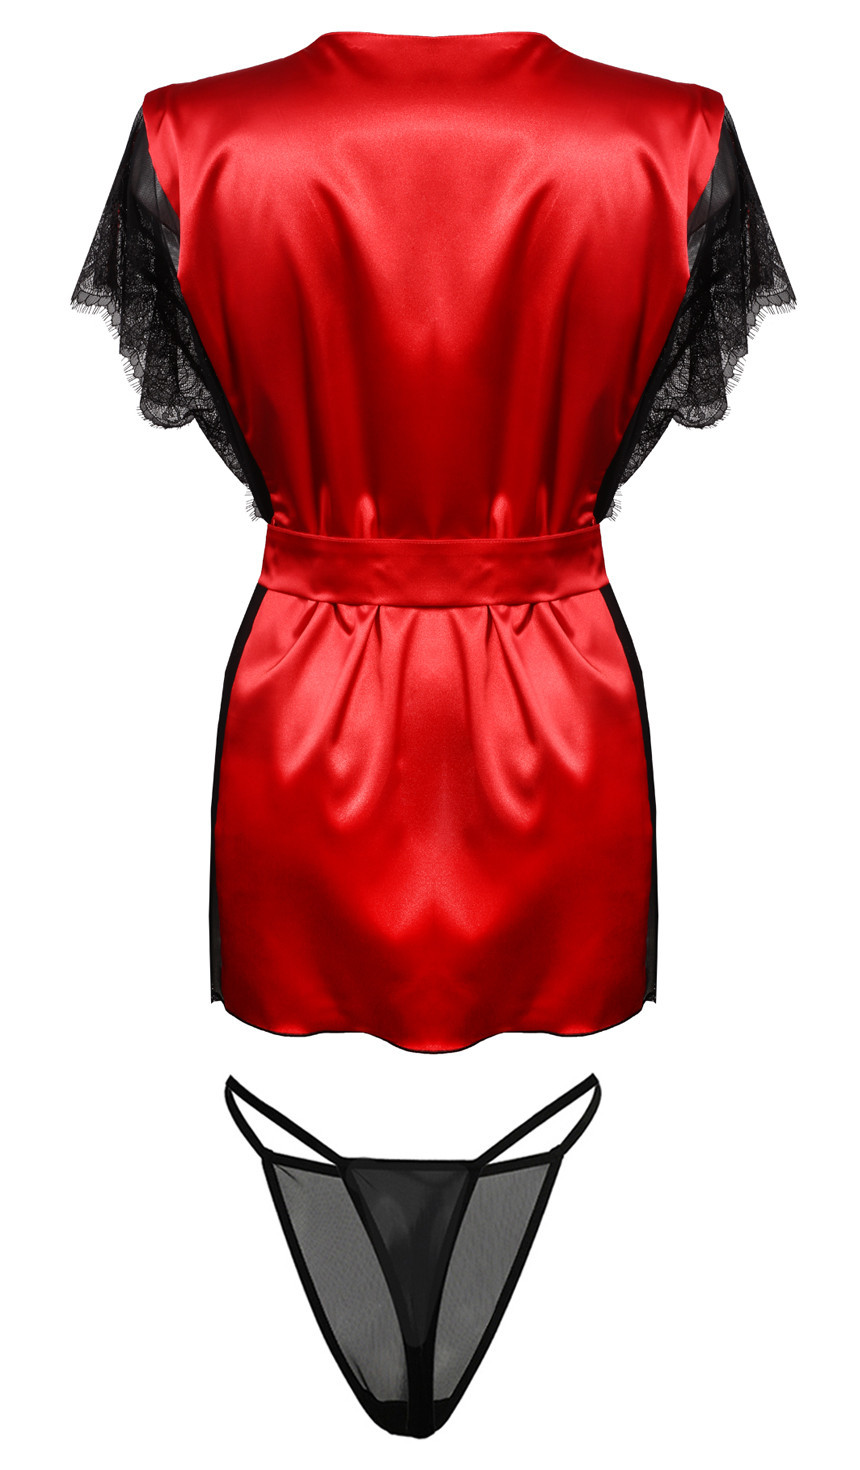 Housecoat model 18240905 Red M - DKaren